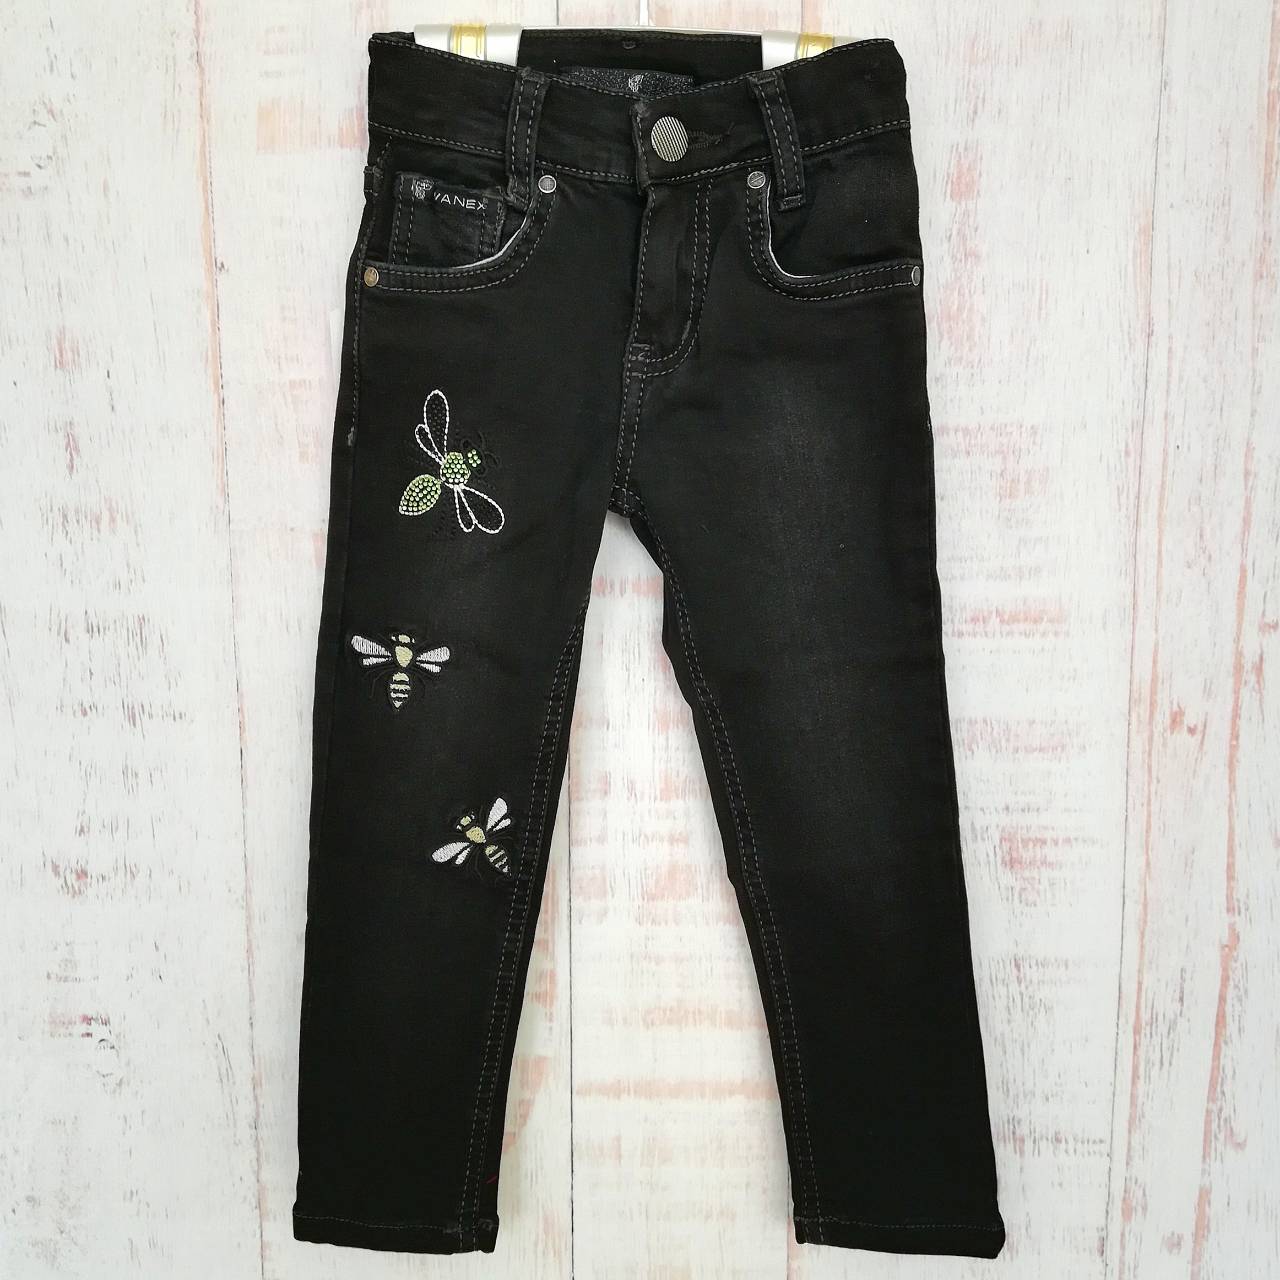 Дитячі джинси для дівчинки (2145), Wanex